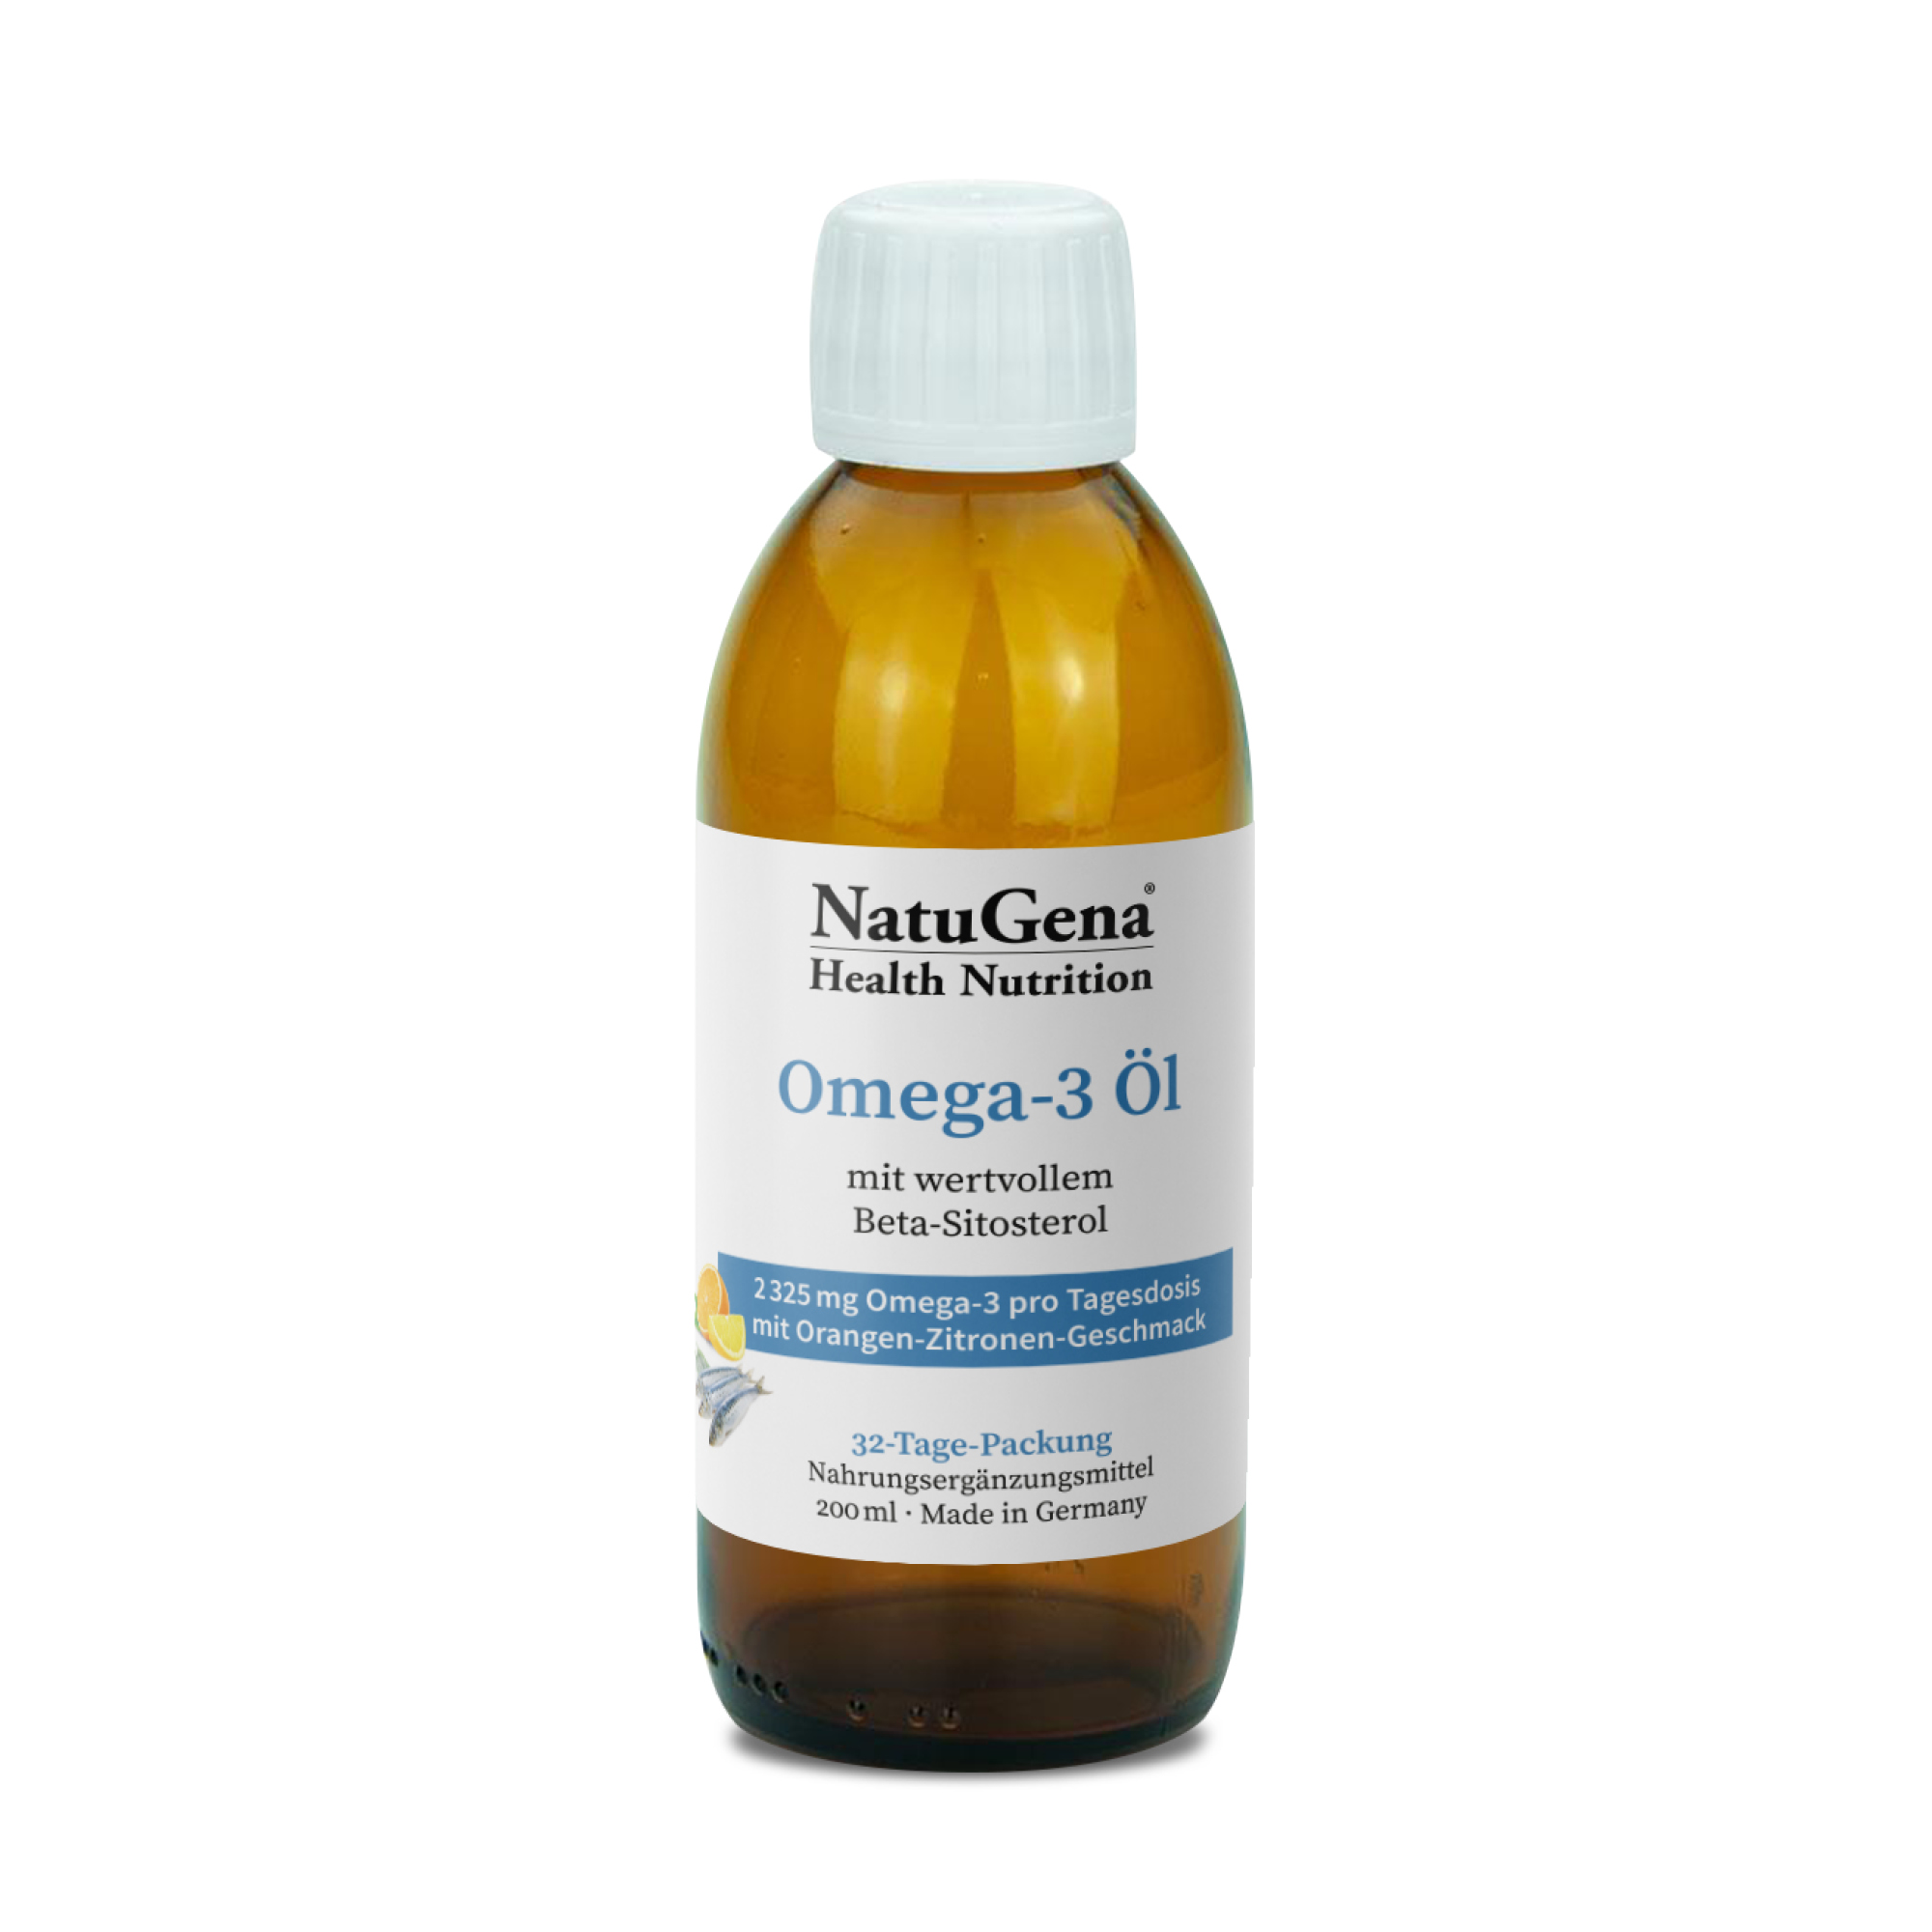 NatuGena Omega-3 Öl | 200ml